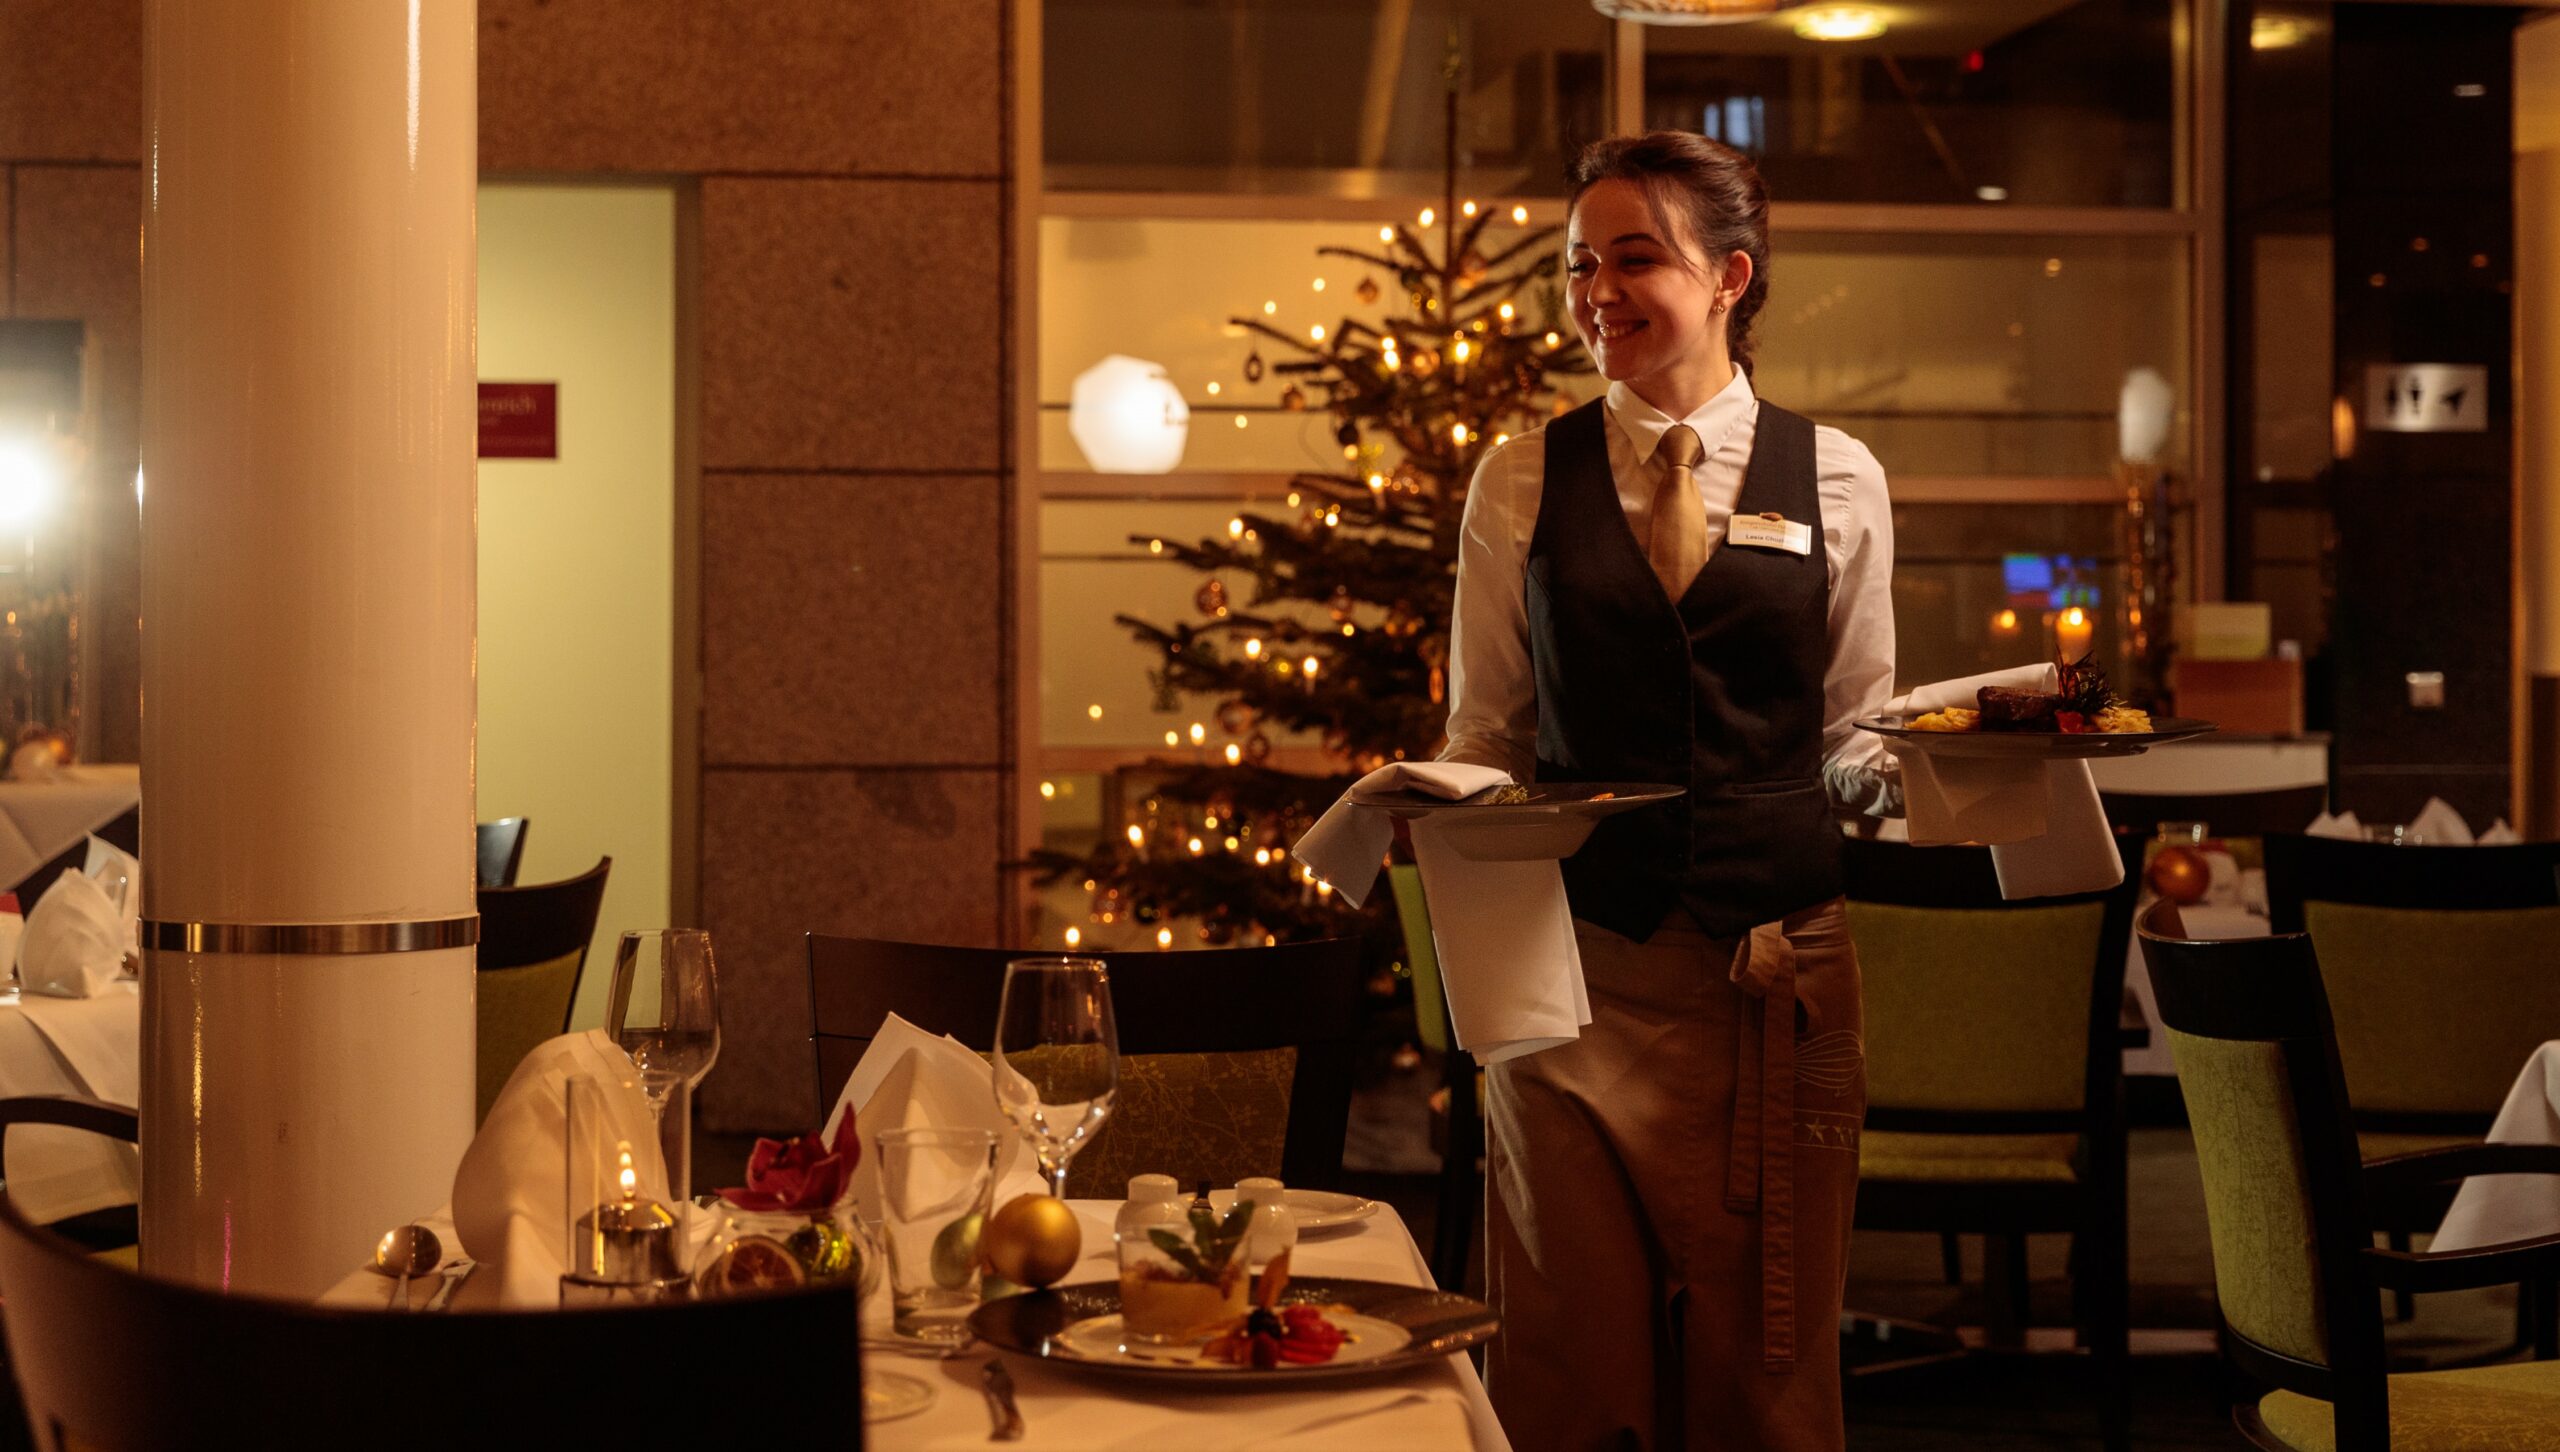 Weihnachten-Service-Restaurant-Bedienung-scaled